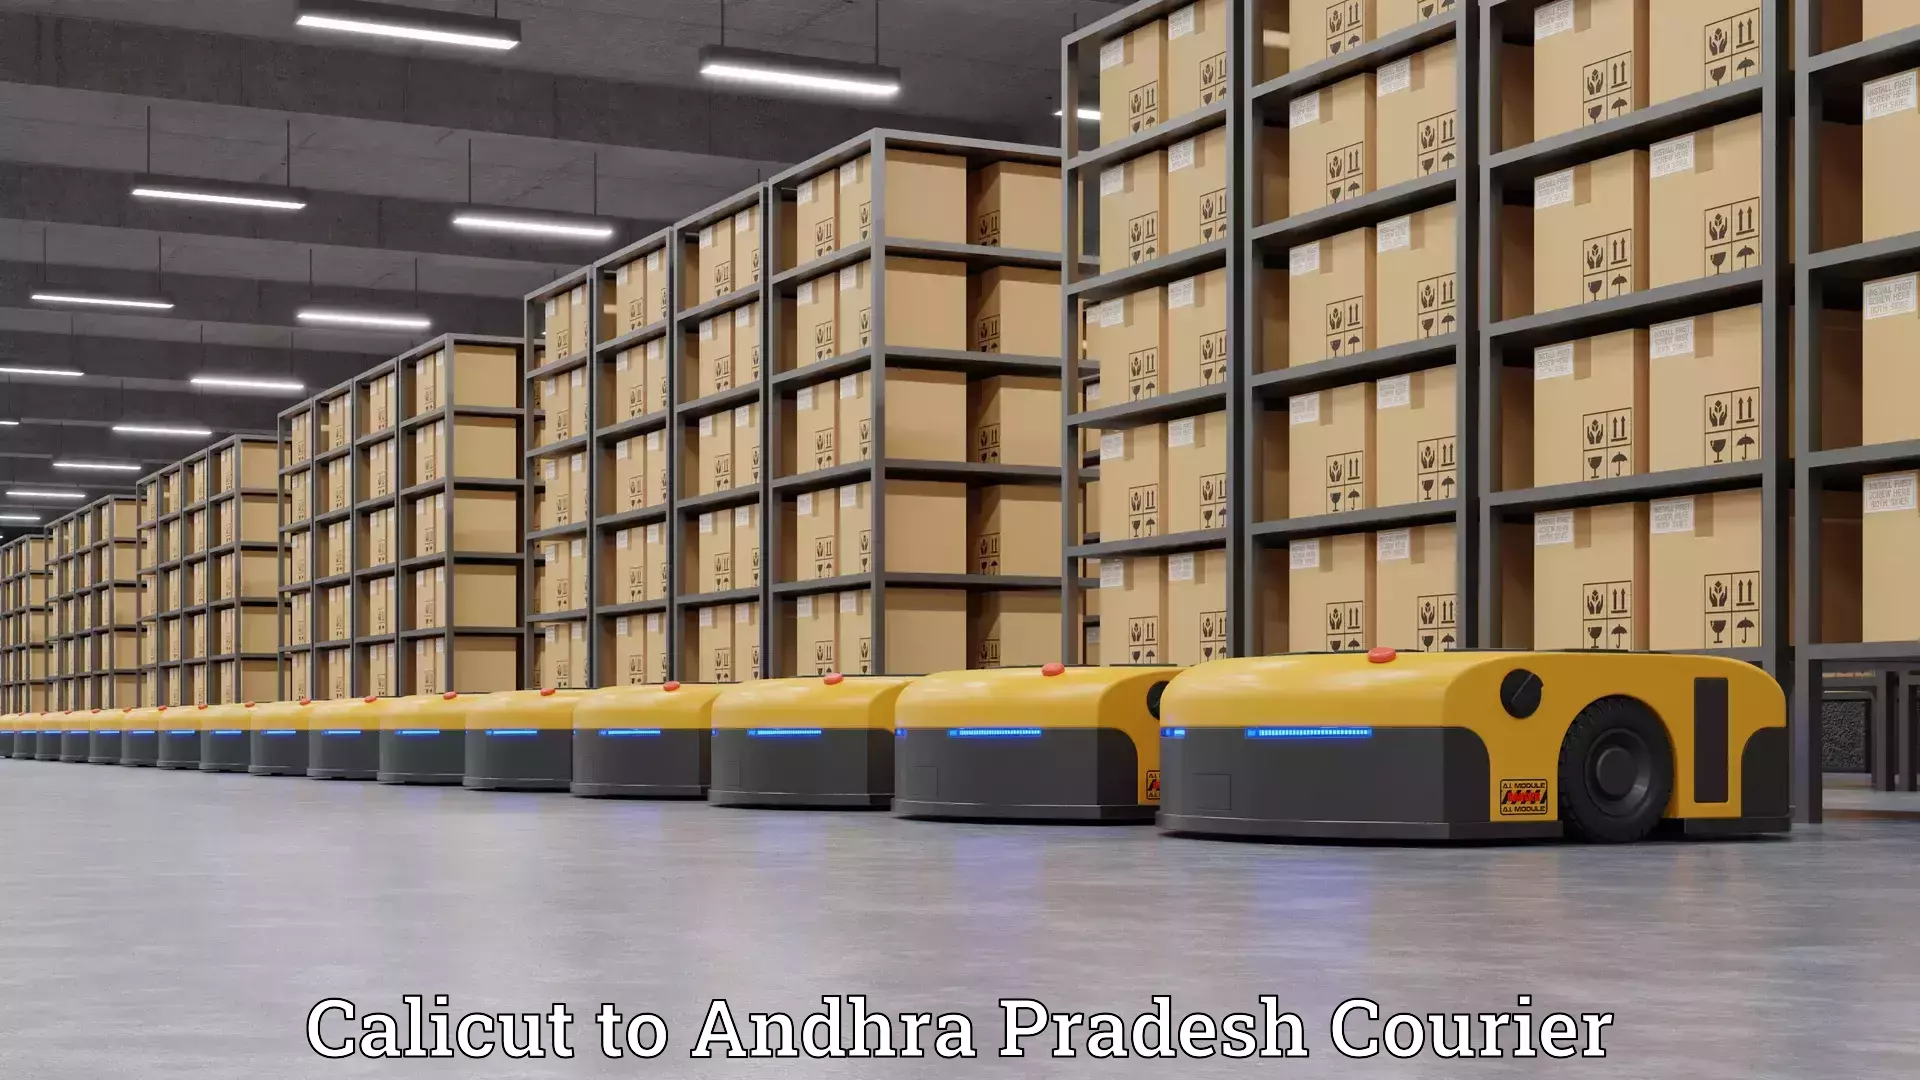 Home moving specialists Calicut to Andhra Pradesh